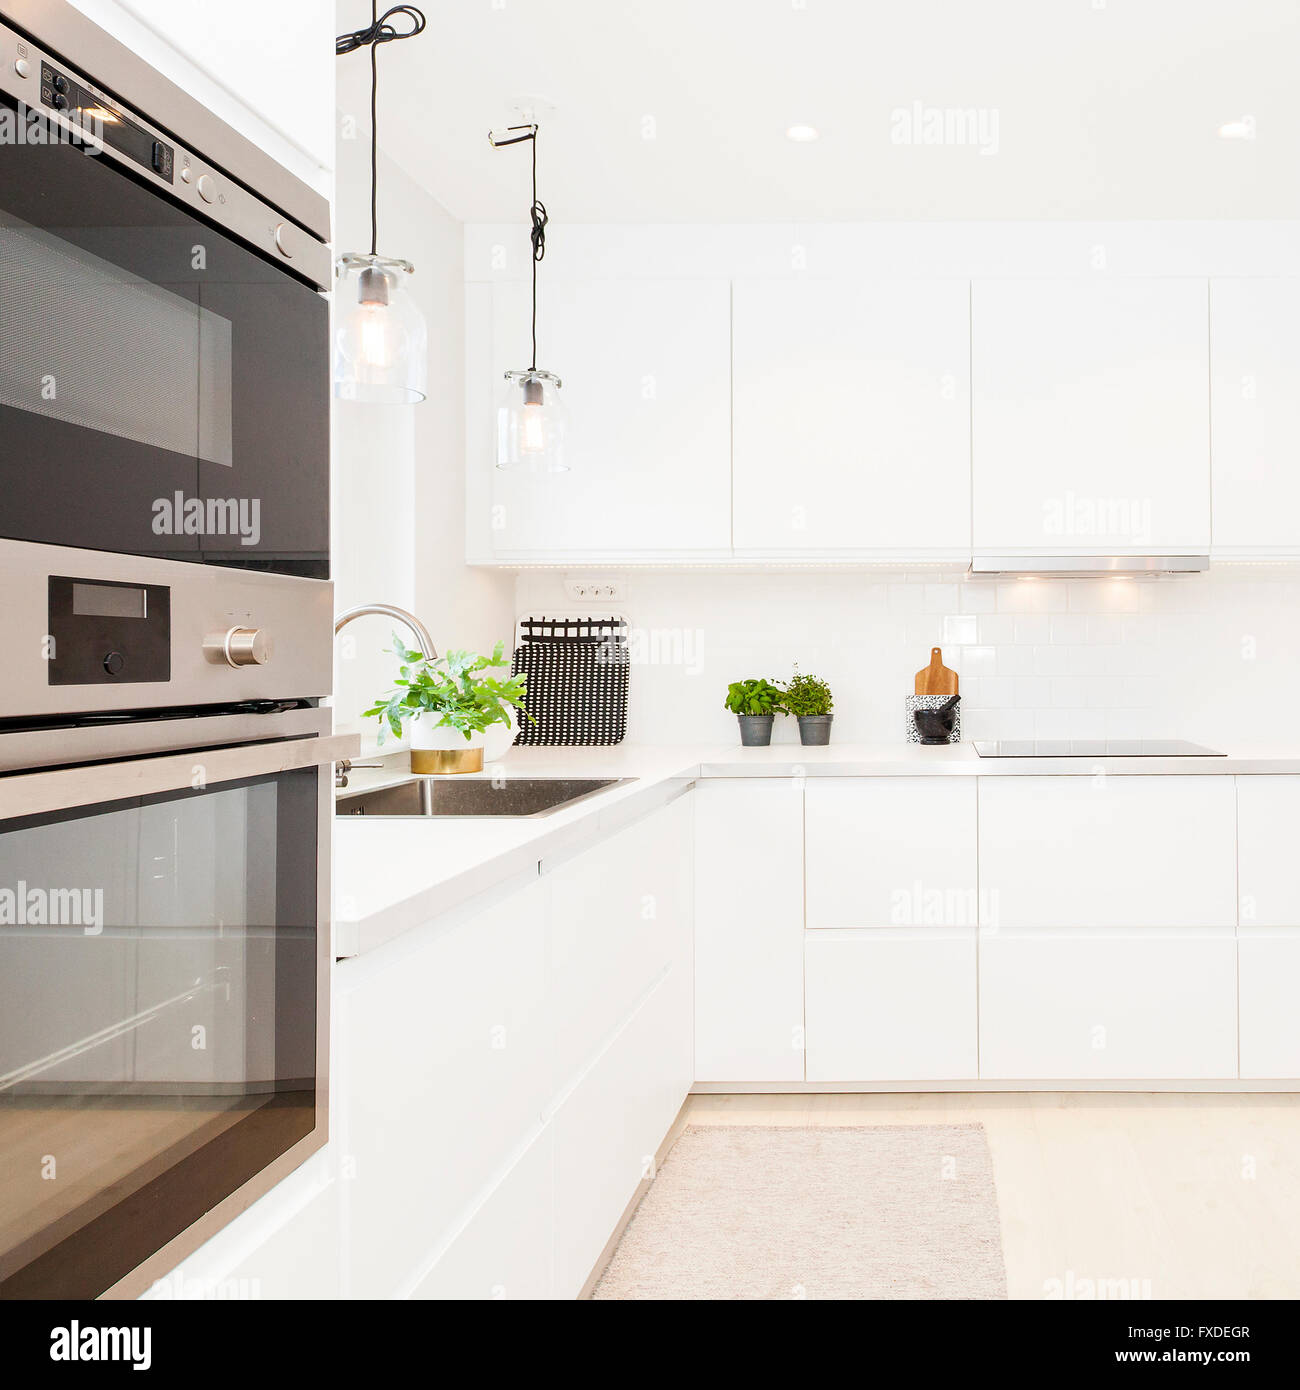 ausgefallene Küche Interieur in skandinavischem design Stockfoto